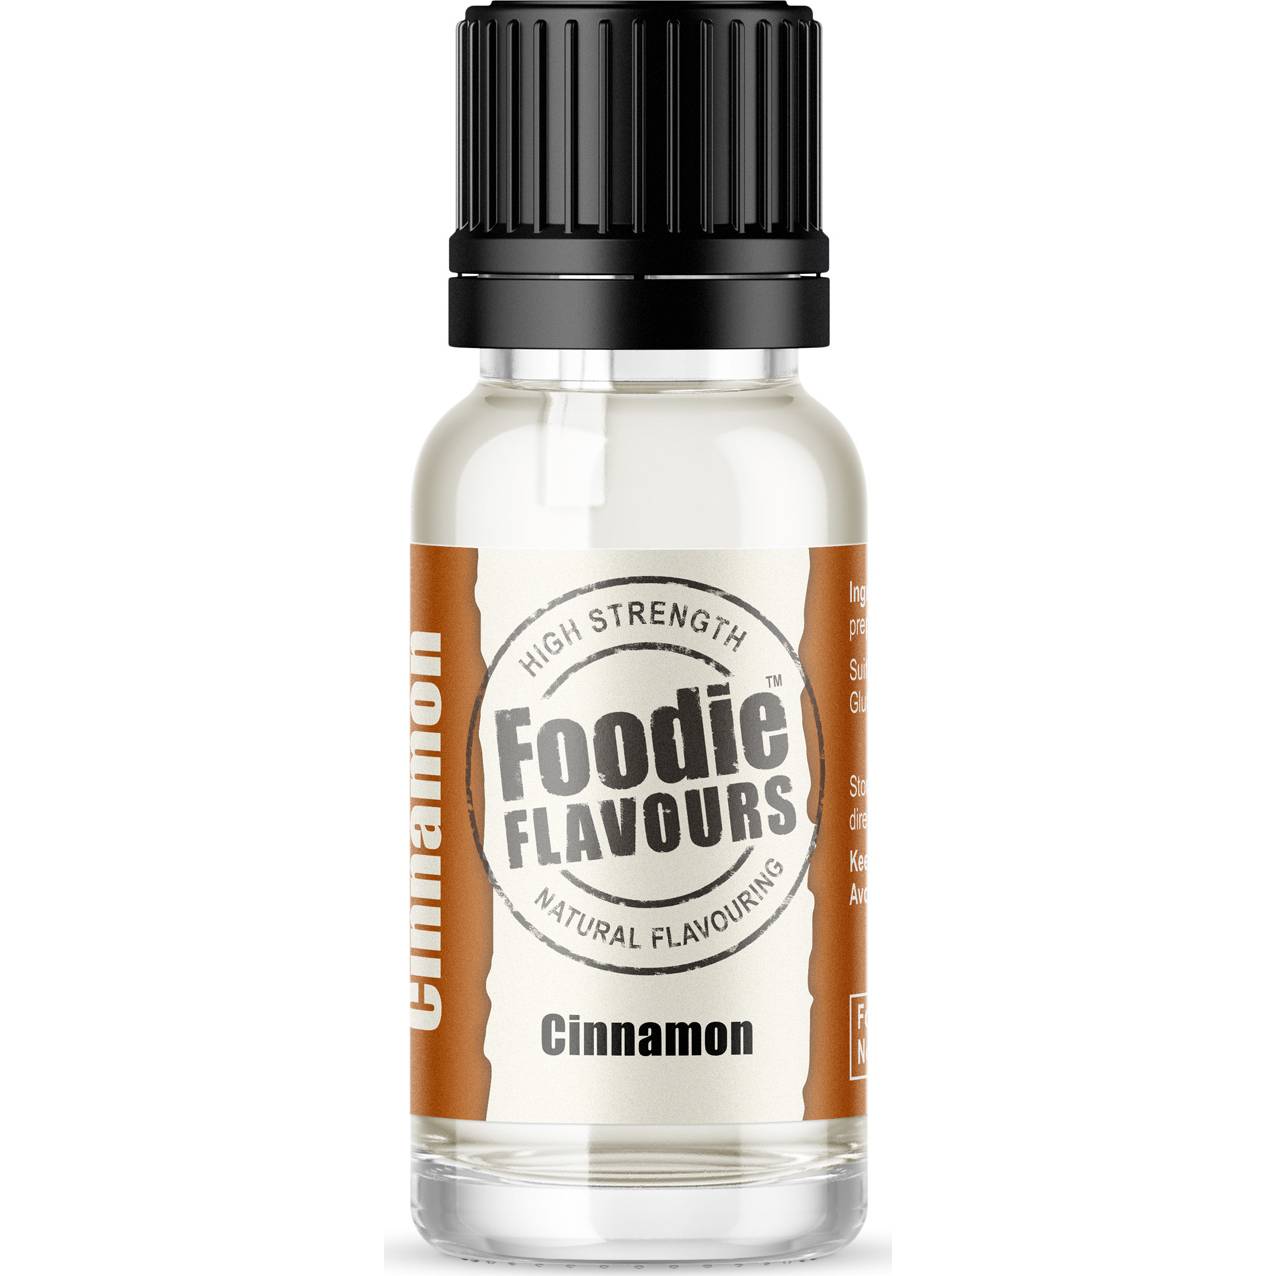 Přírodní koncentrované aroma 15ml skořice - Foodie Flavours